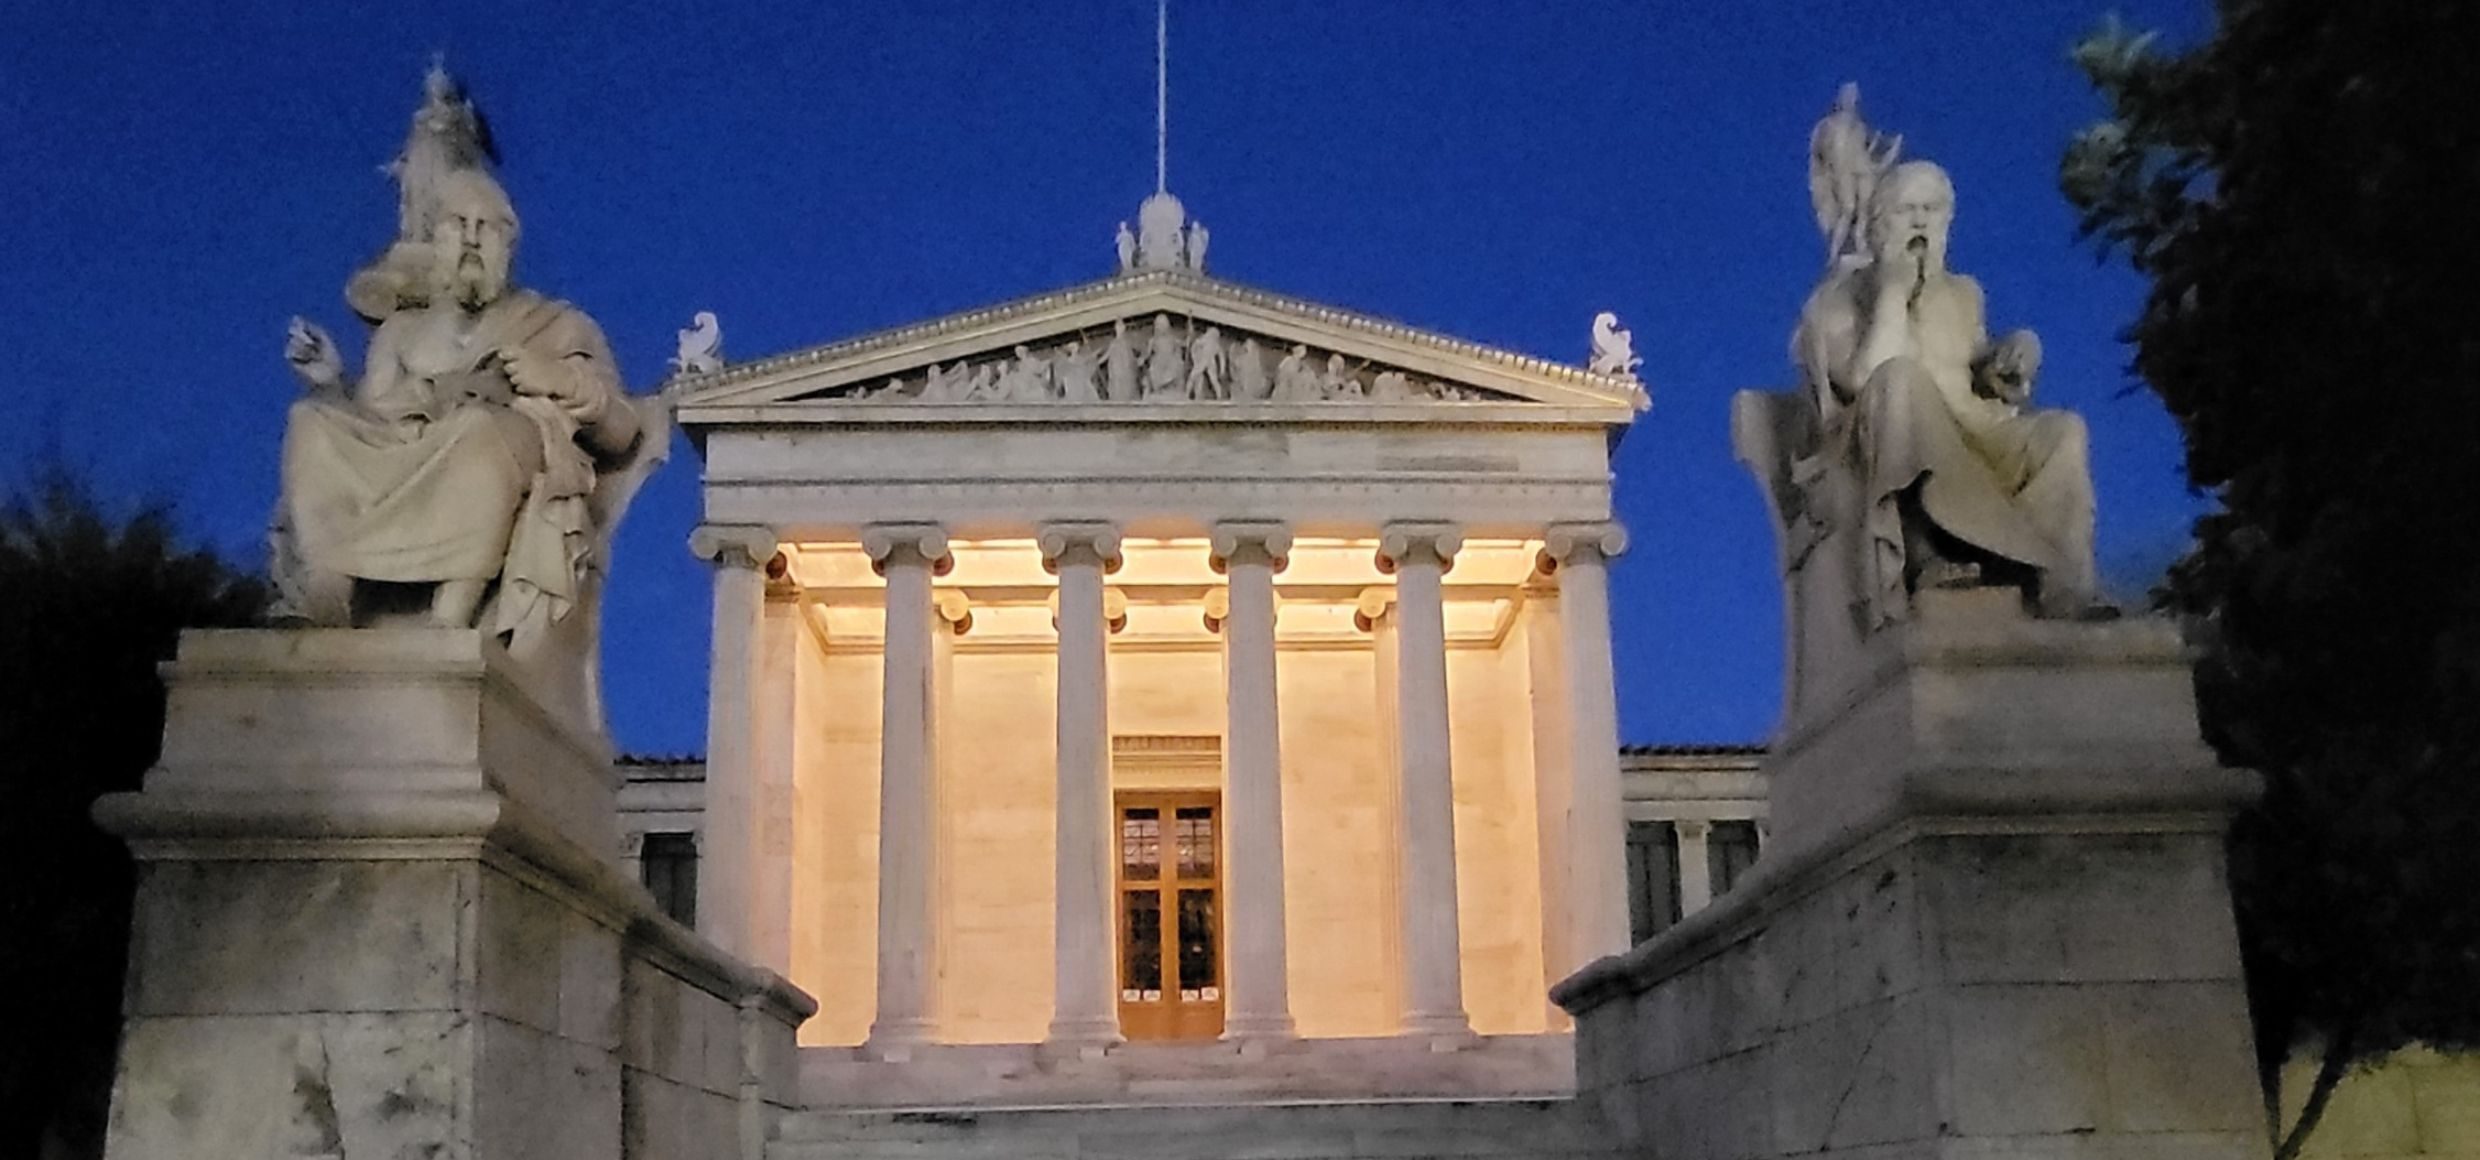 Athen at night